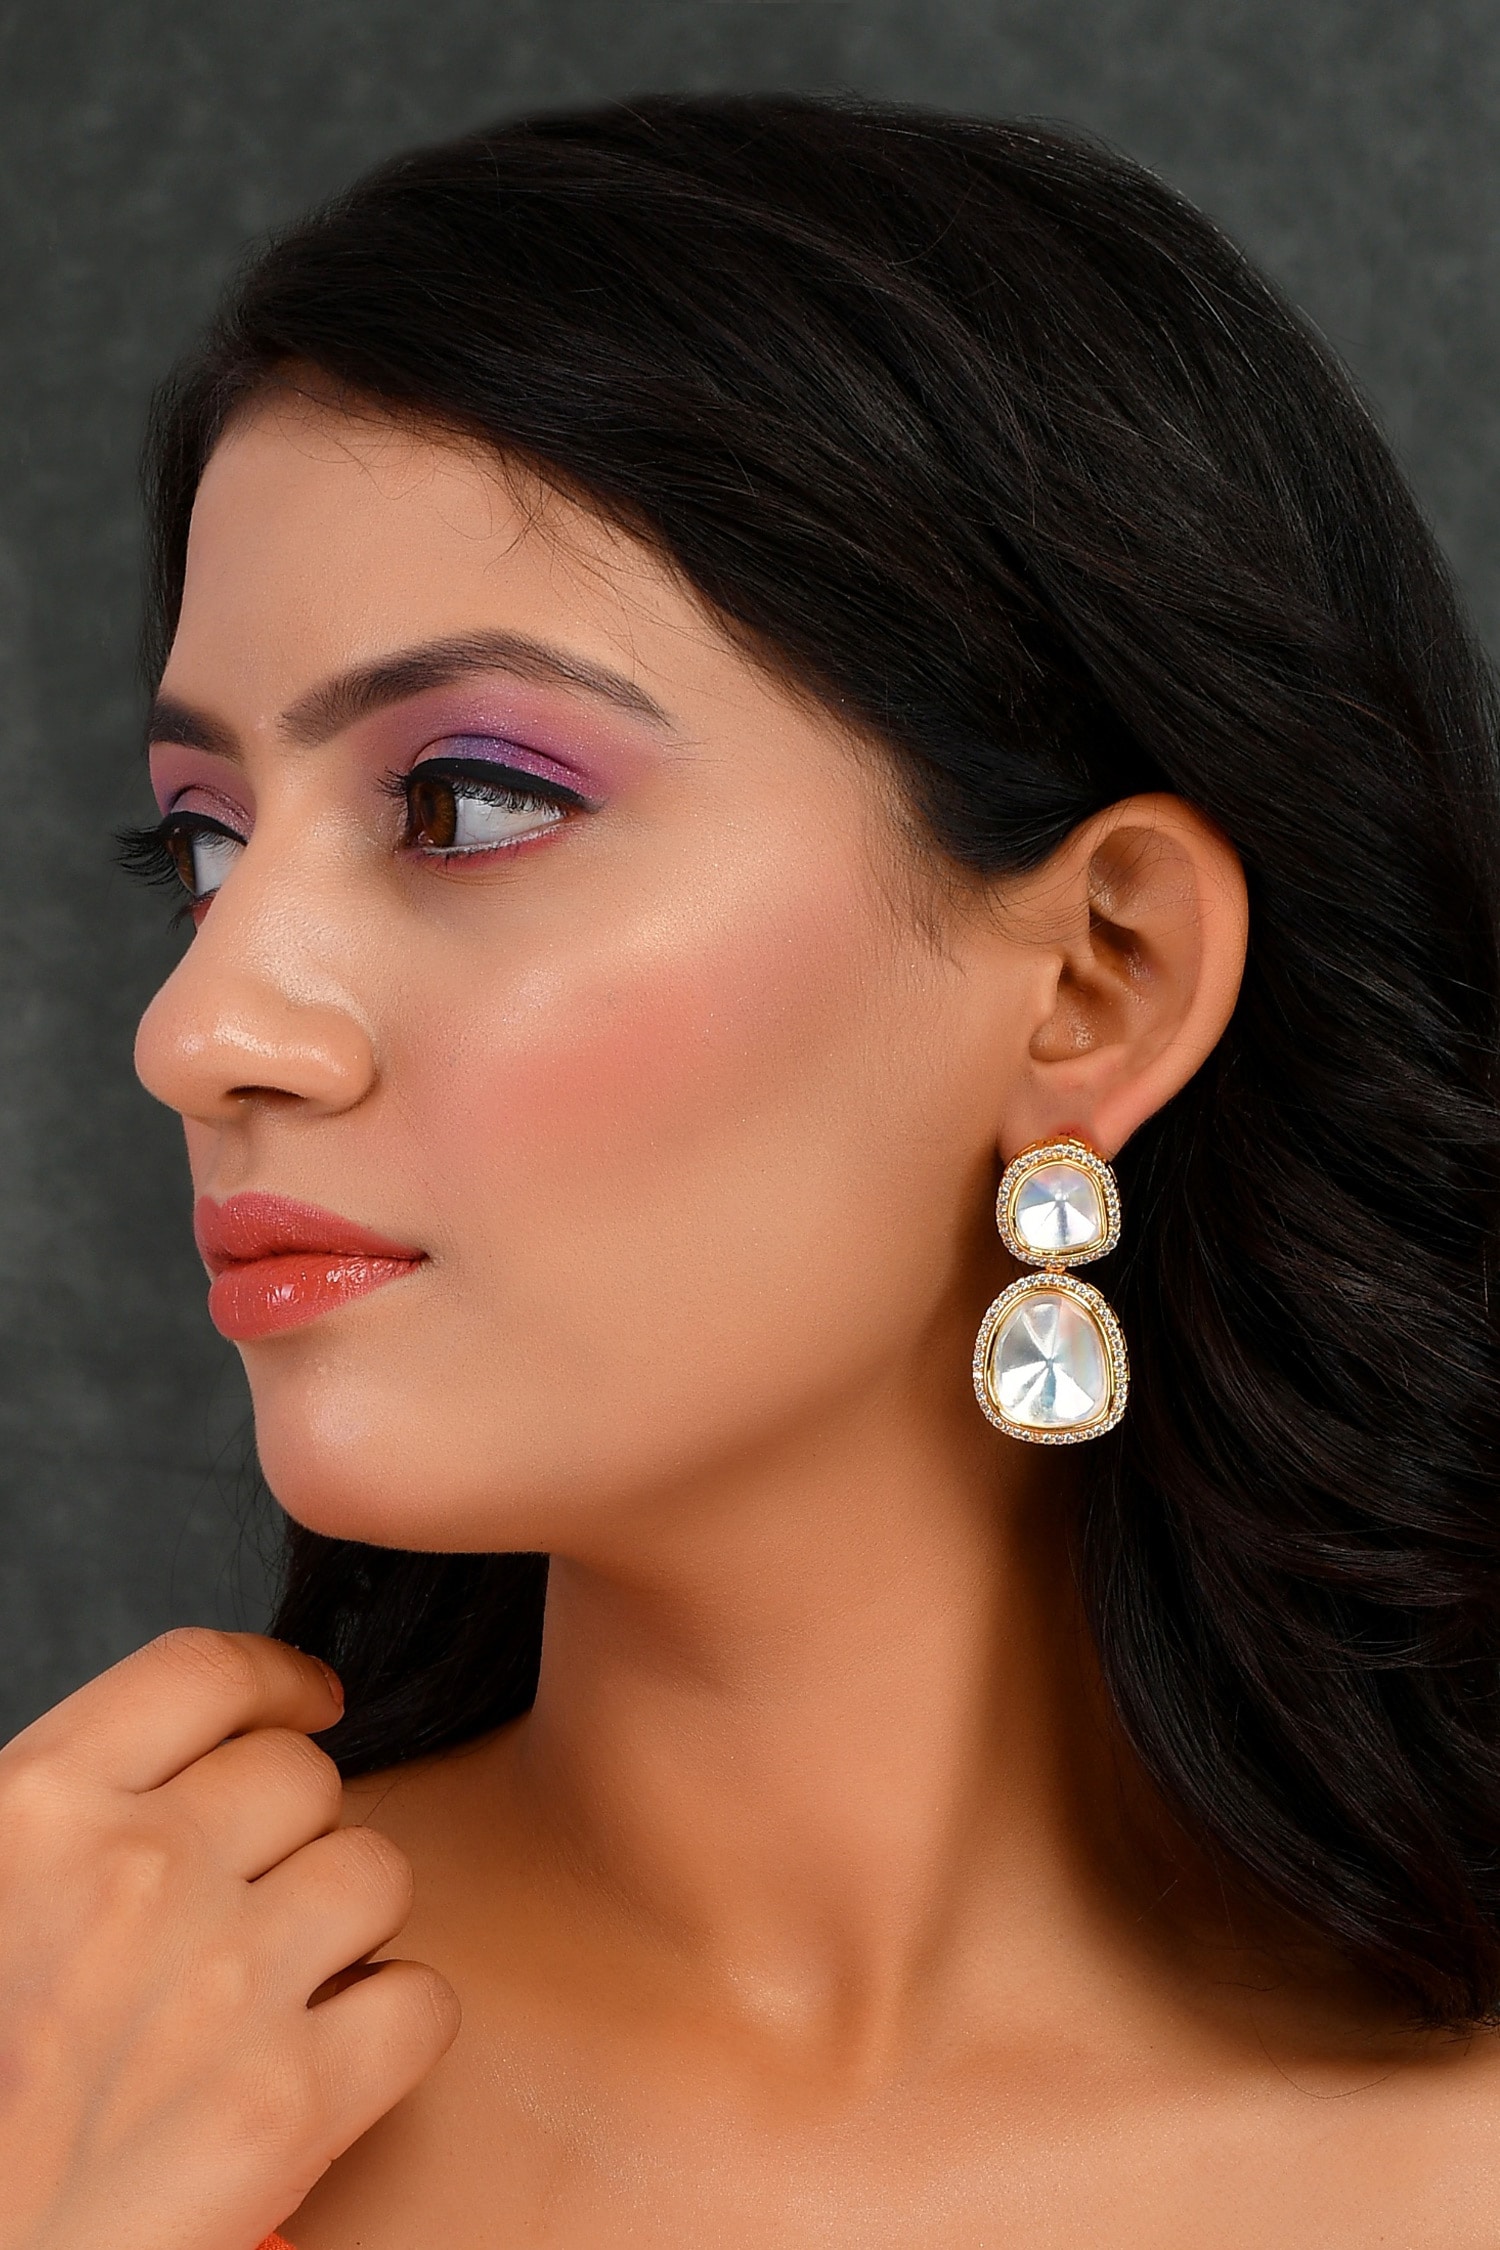 How To Even Your Skin Tone For A Perfect Complexion  Makeupcom   Makeupcom